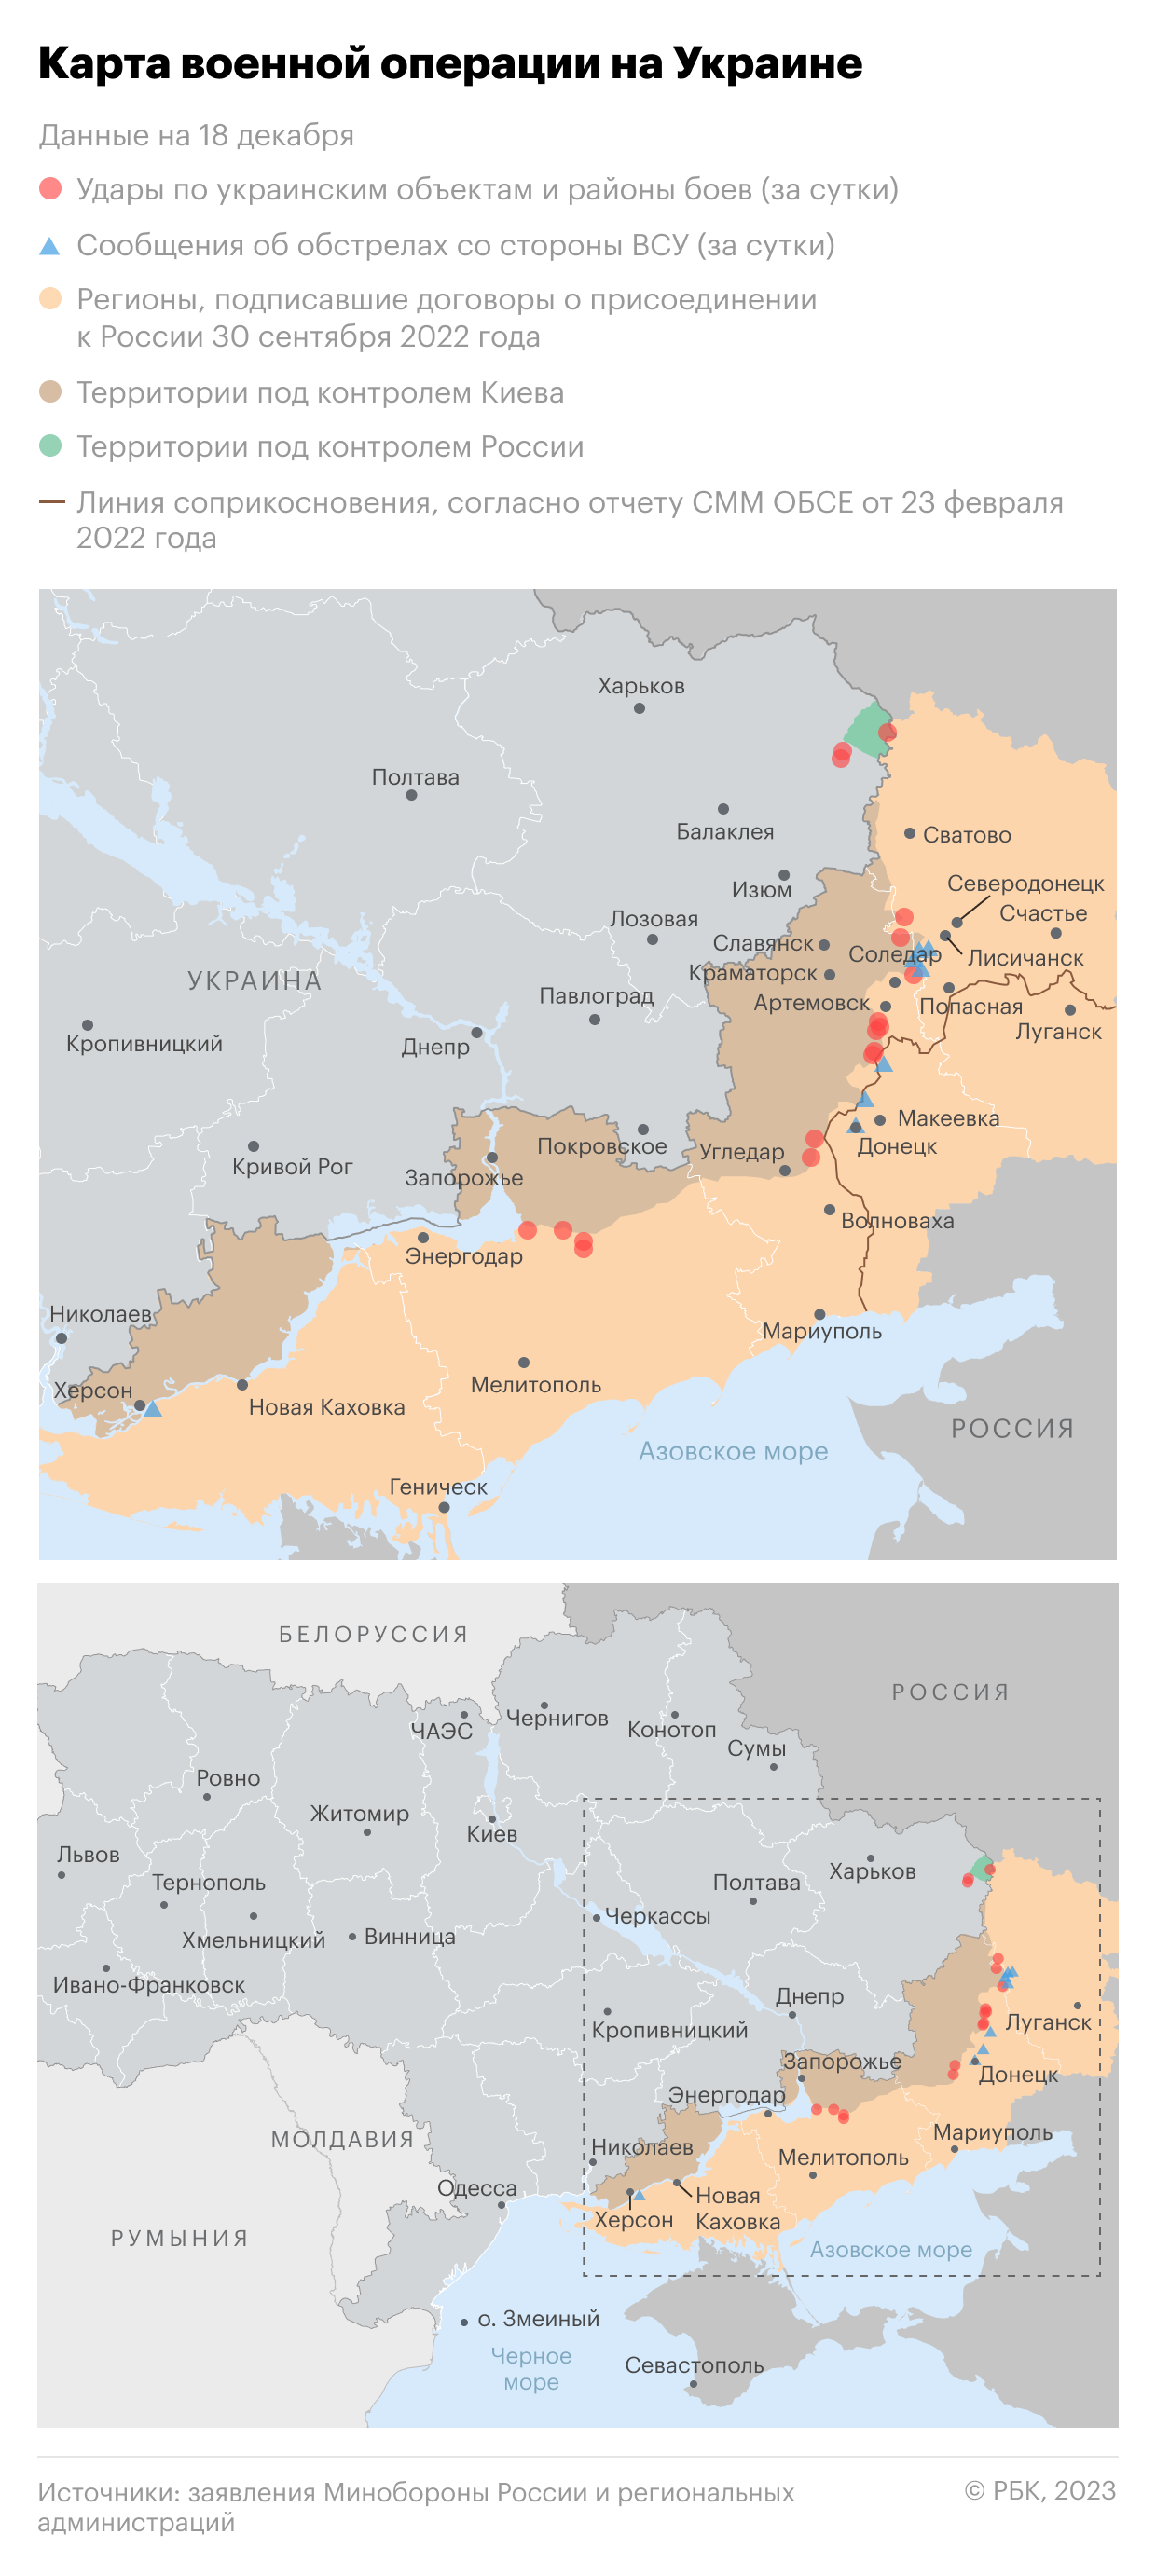 Военная операция на Украине. Карта на 18 декабря